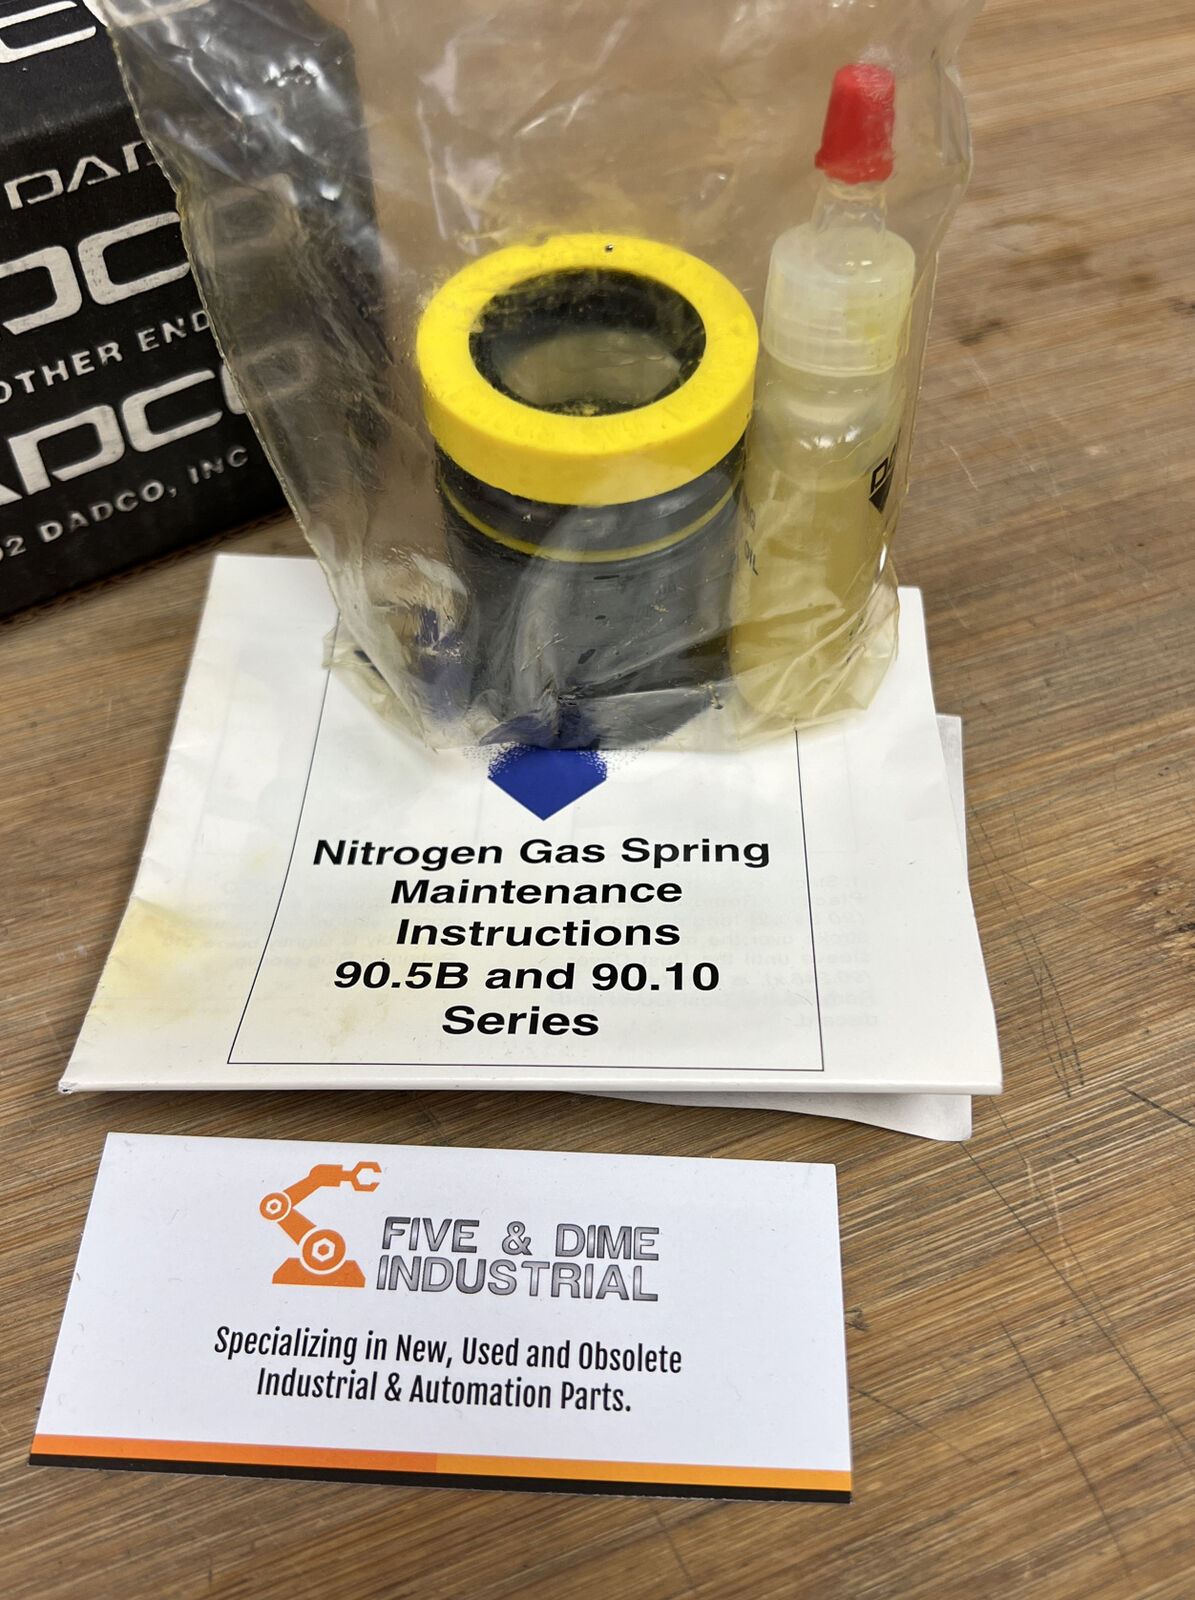 Dadco  NH750 Gas Spring Repair Kit (BK110)